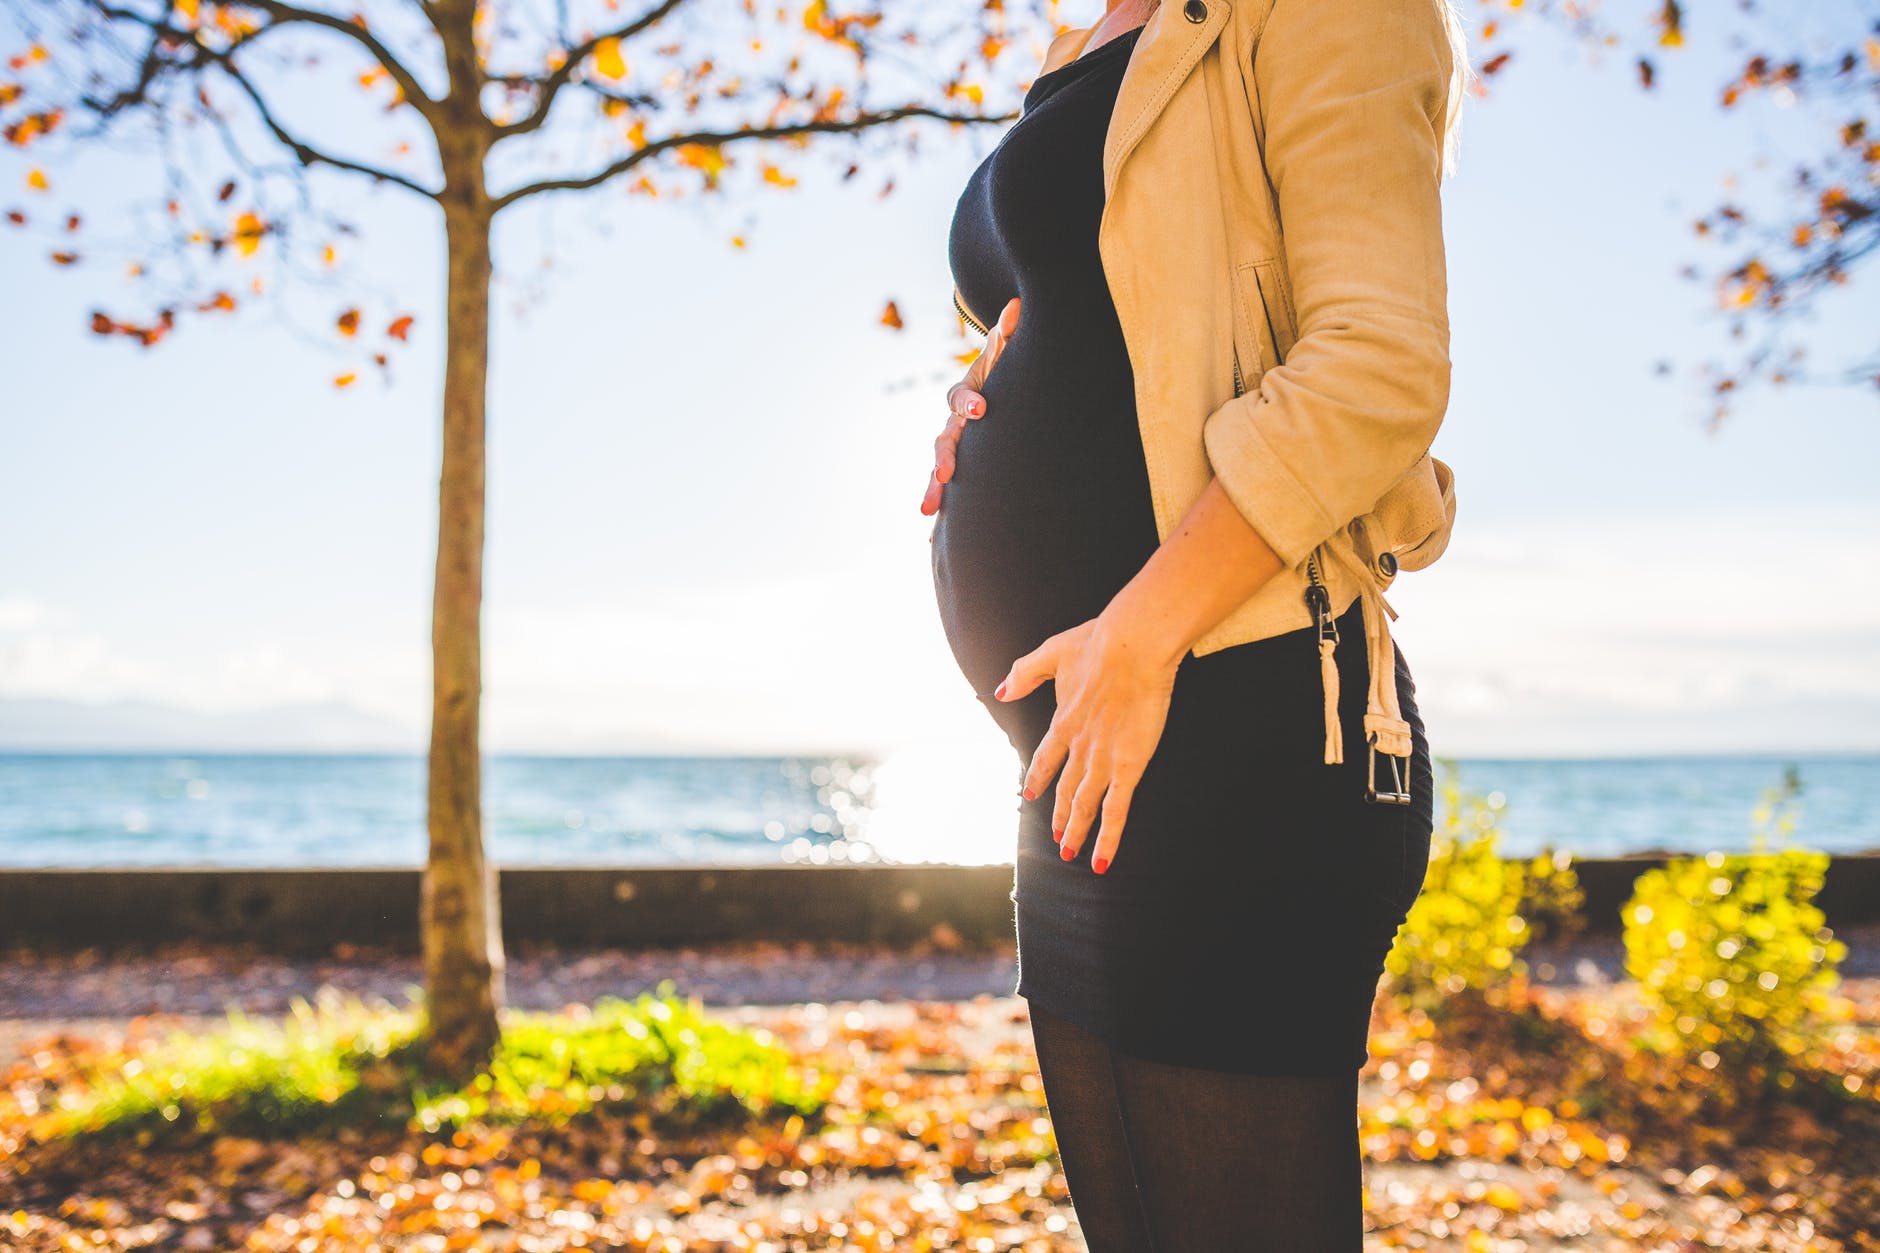 Круралгия и бременност: Как да се справим с гърчовете? (Упражнения)